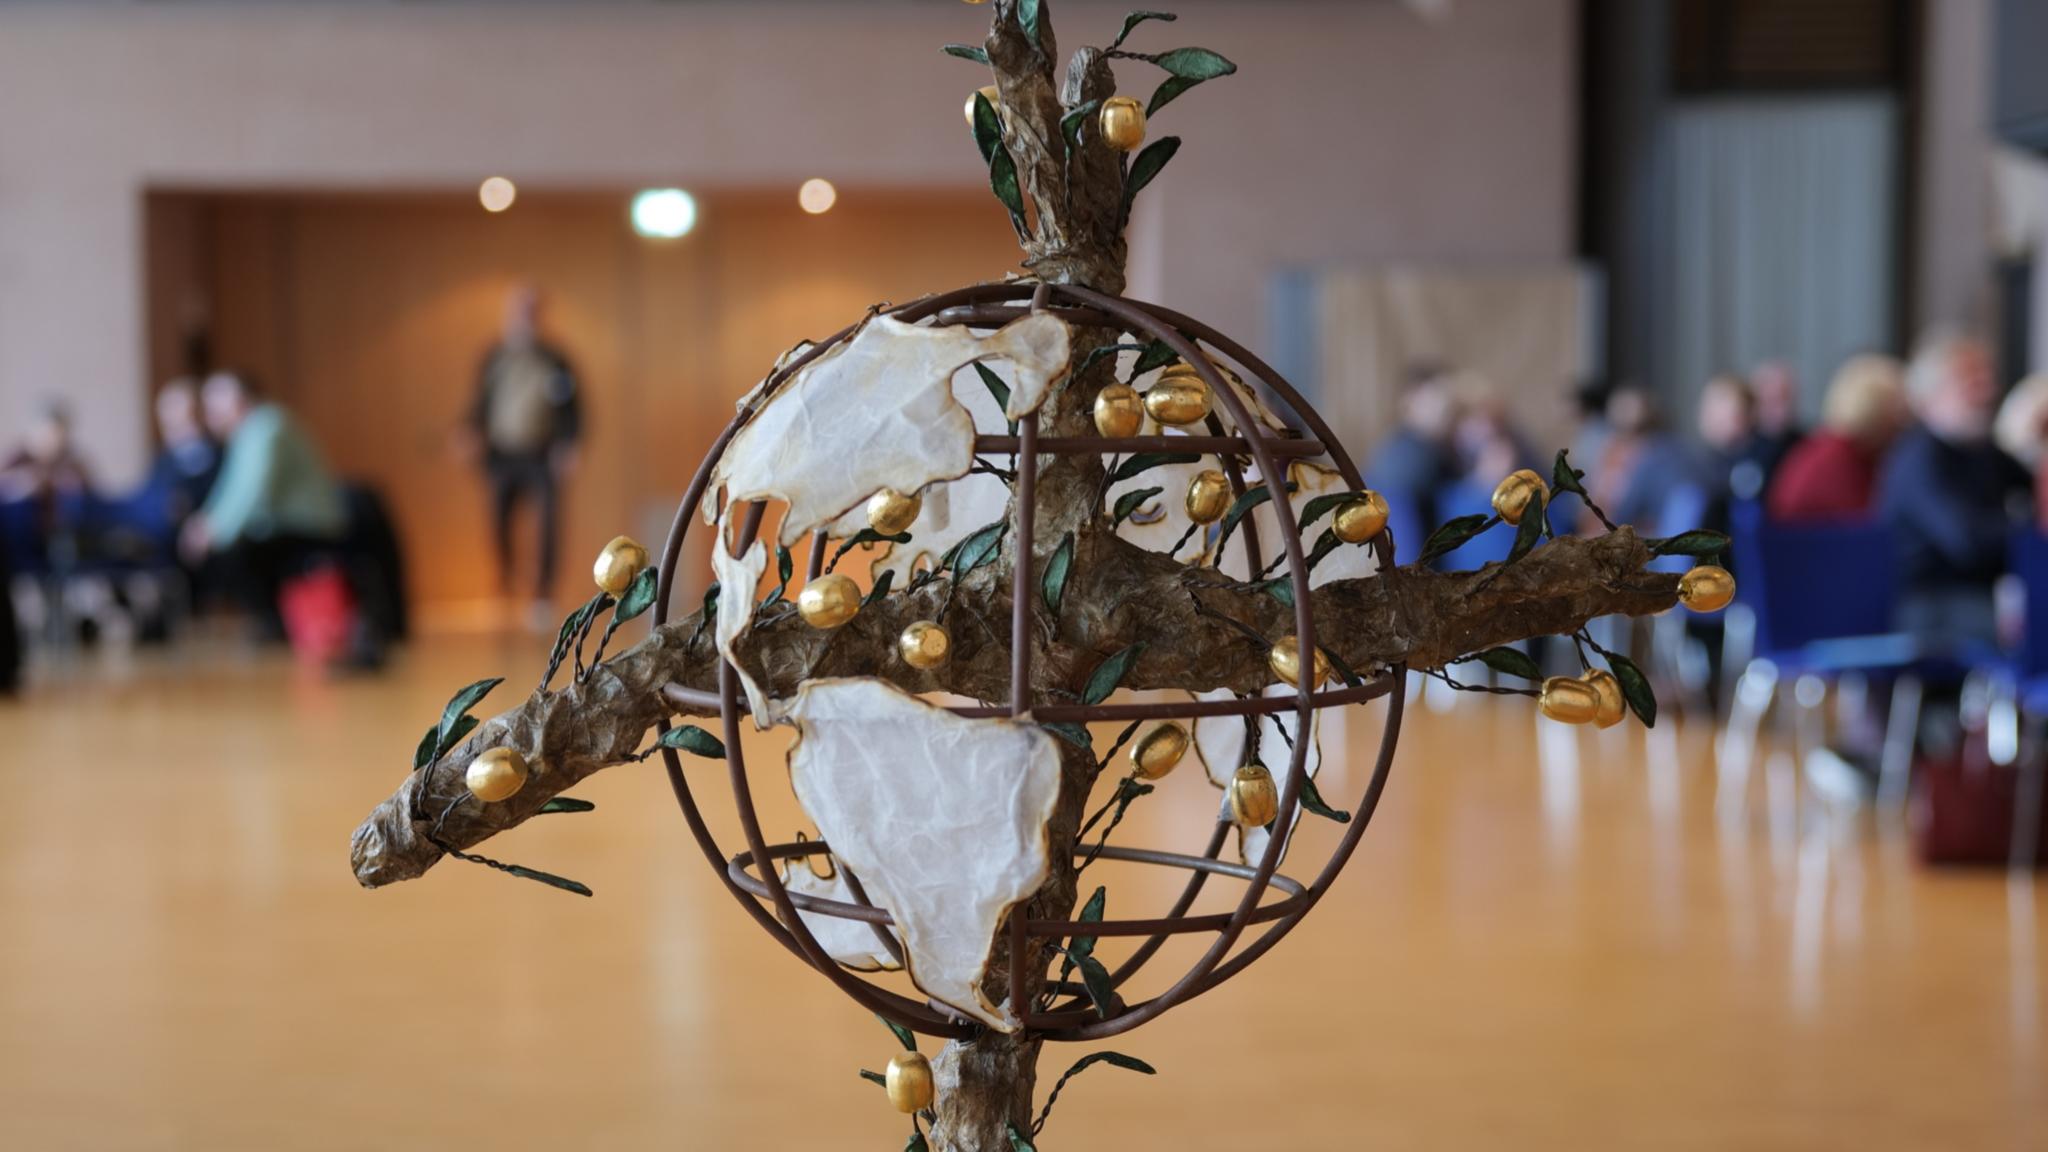 Das Friedenskreuz ist ein Symbol für das gemeinsame Jahresmotto 2020 der katholischen Hilfswerke 'Frieden leben' und wurde vom Eichstätter Künstler Raphael Graf gestaltet.